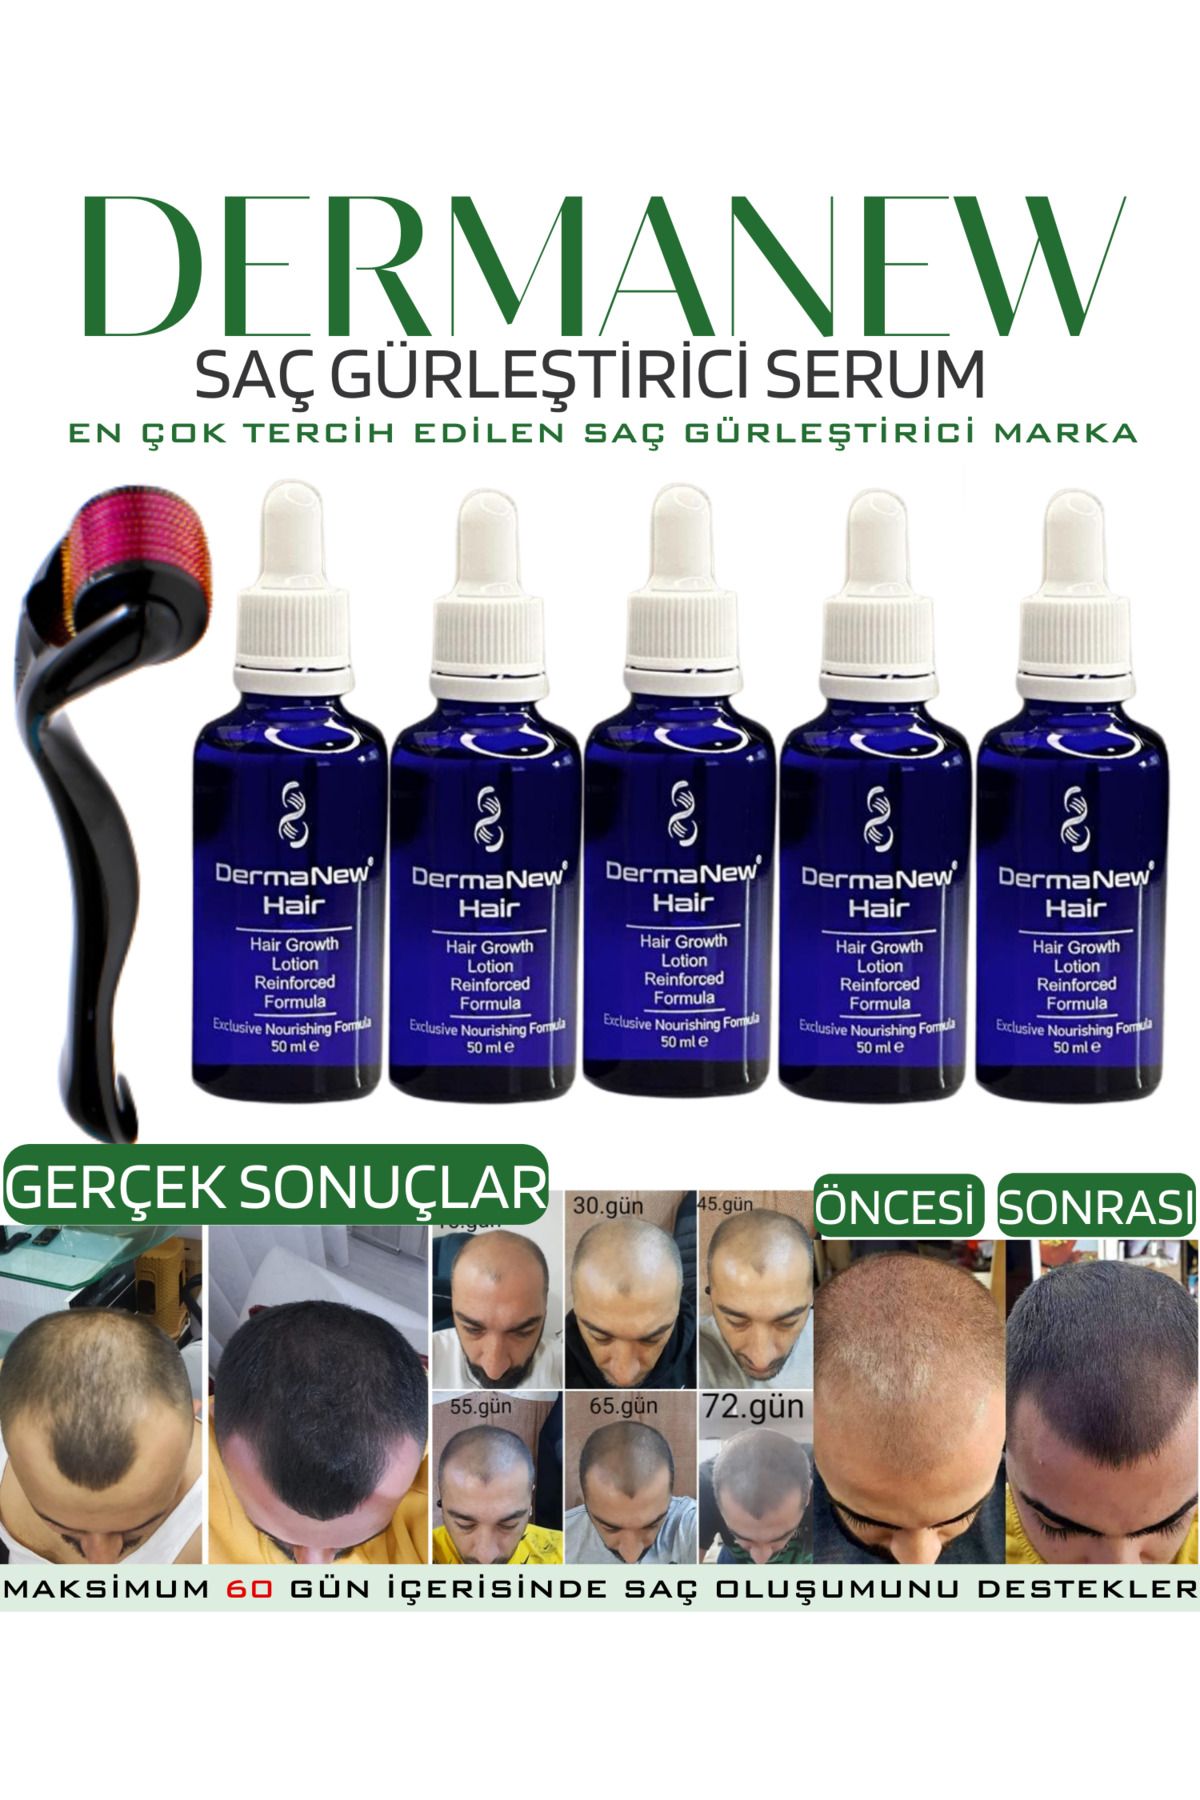 dermanew hair Dermanewhair Saç Gürleştirici Losyon Saç Losyonu - Dermanew - Sac Sıkarıcı / 5 Adet Serum Roller